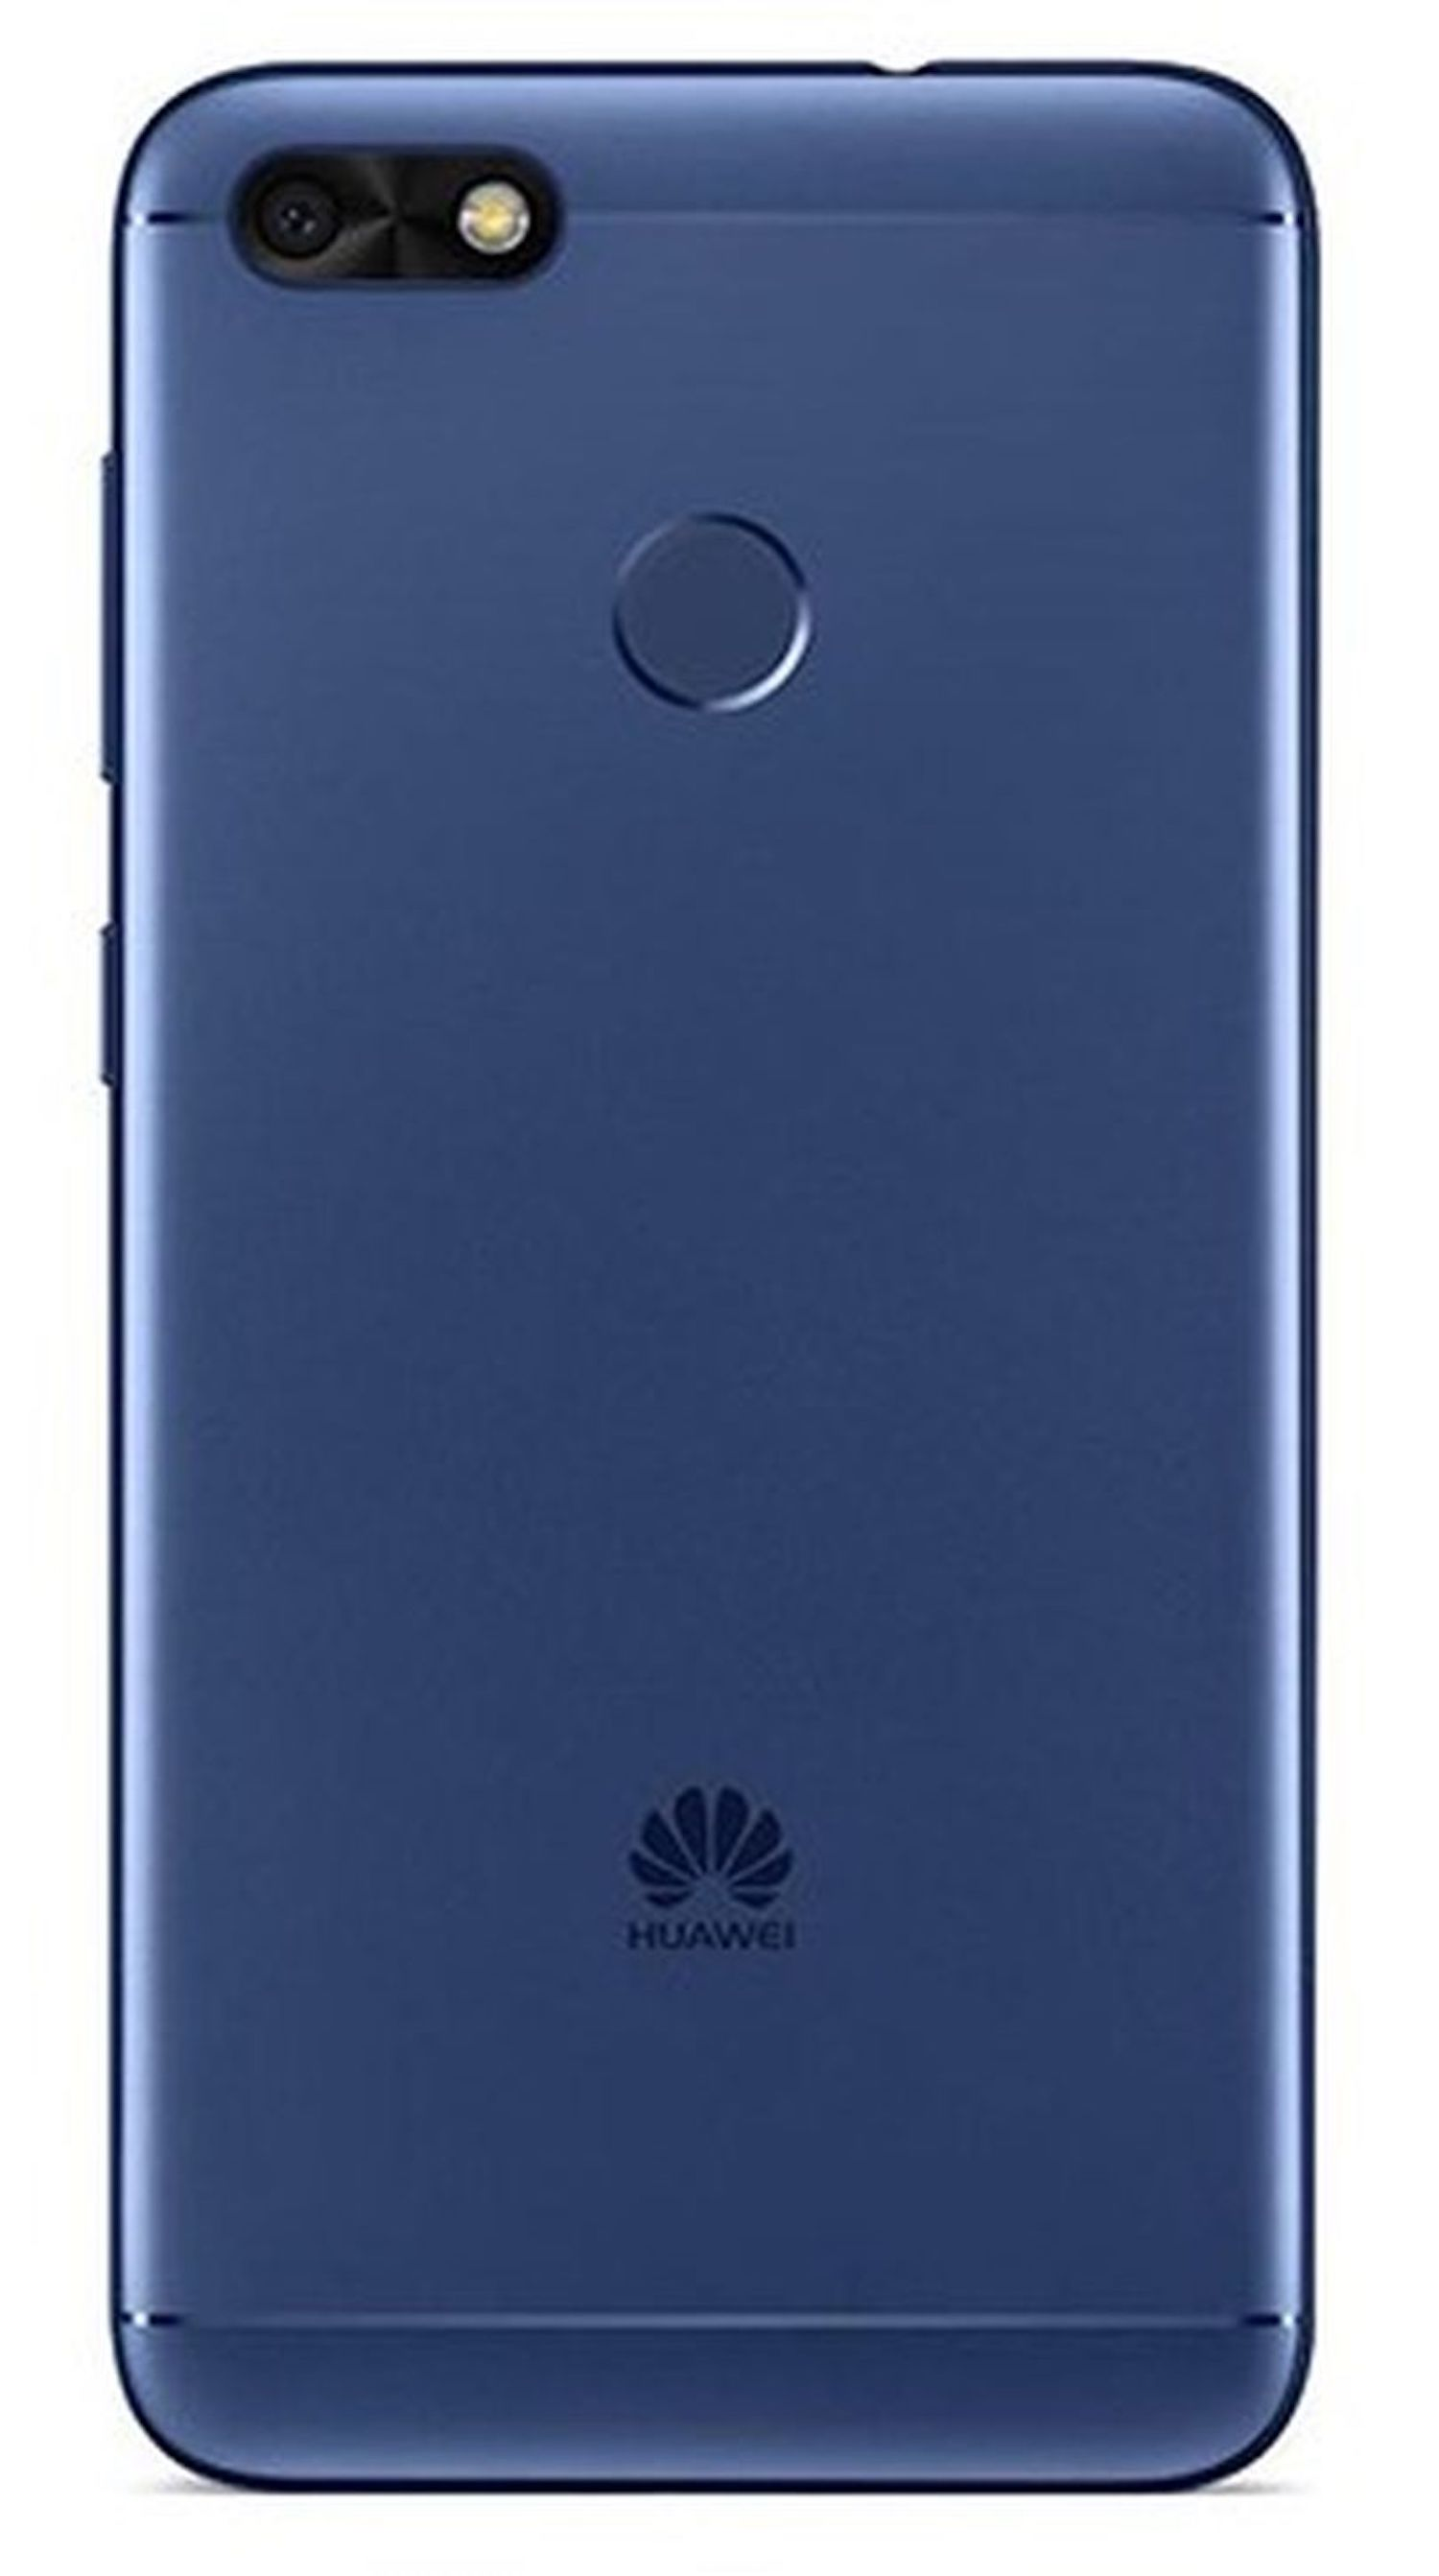 HUAWEI P9 Lite Mini 32 Dual SIM Blau GB